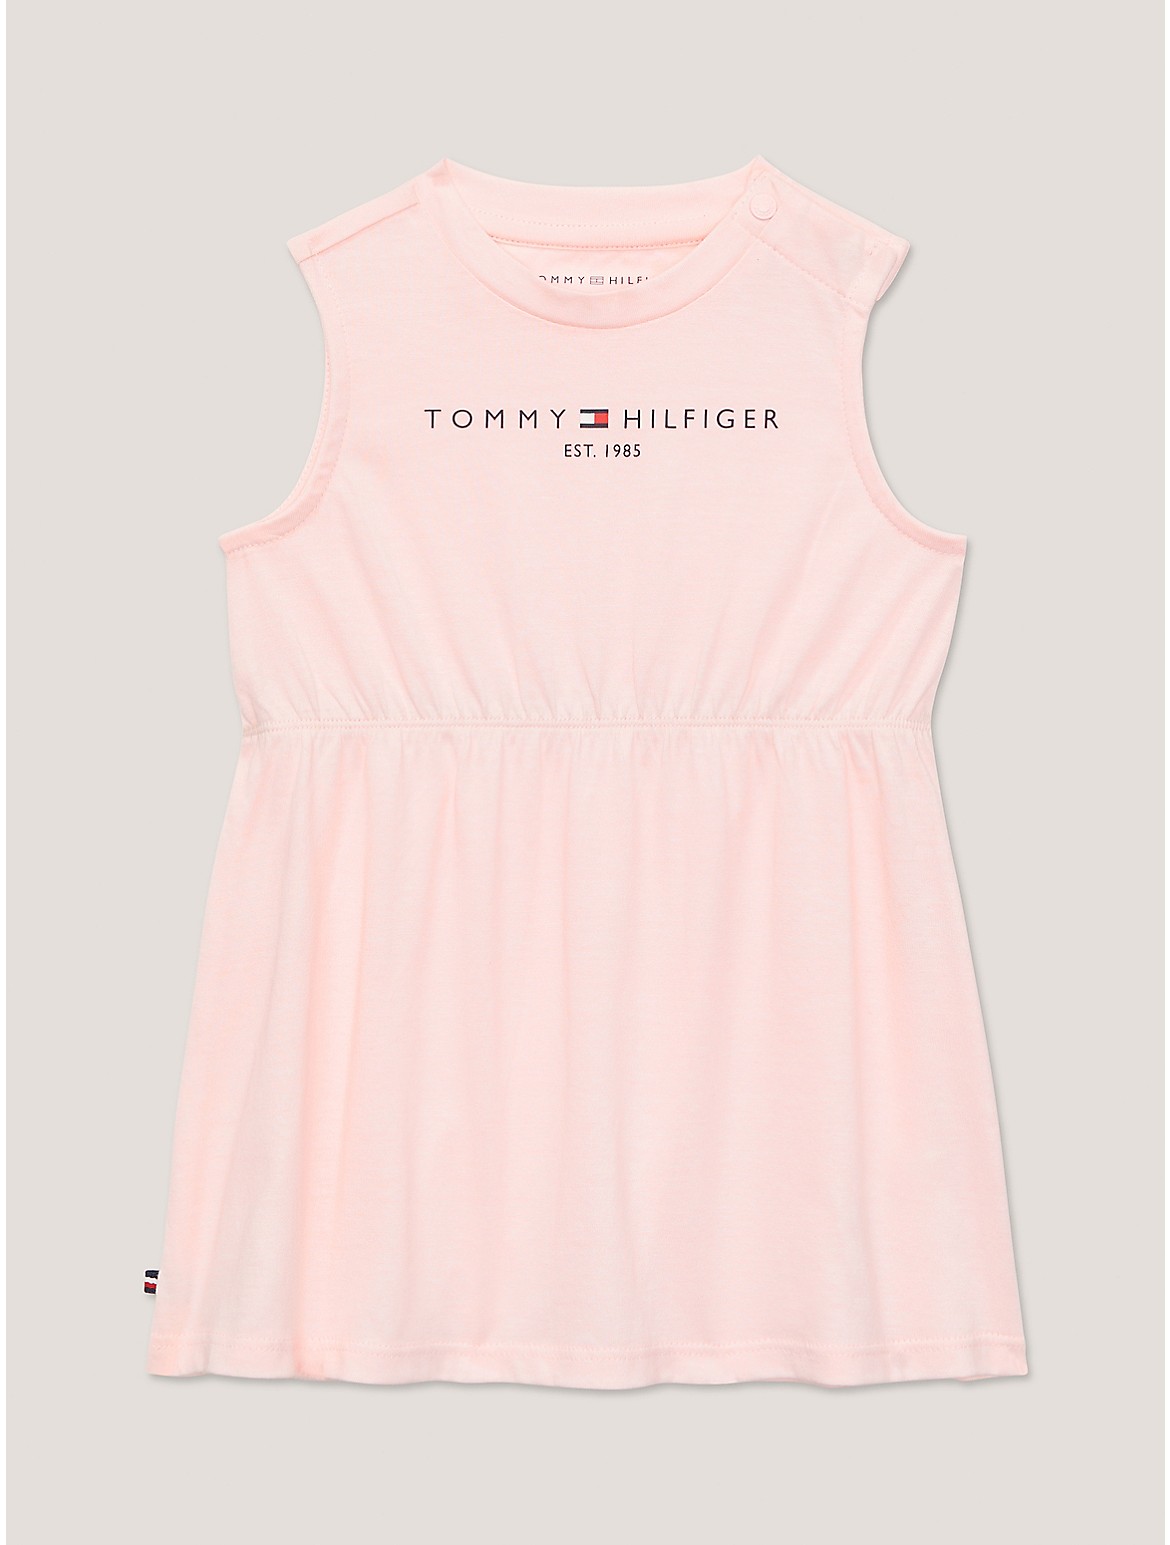 Tommy Hilfiger Girls' Babies' Sleeveless Logo T-Shirt Dress